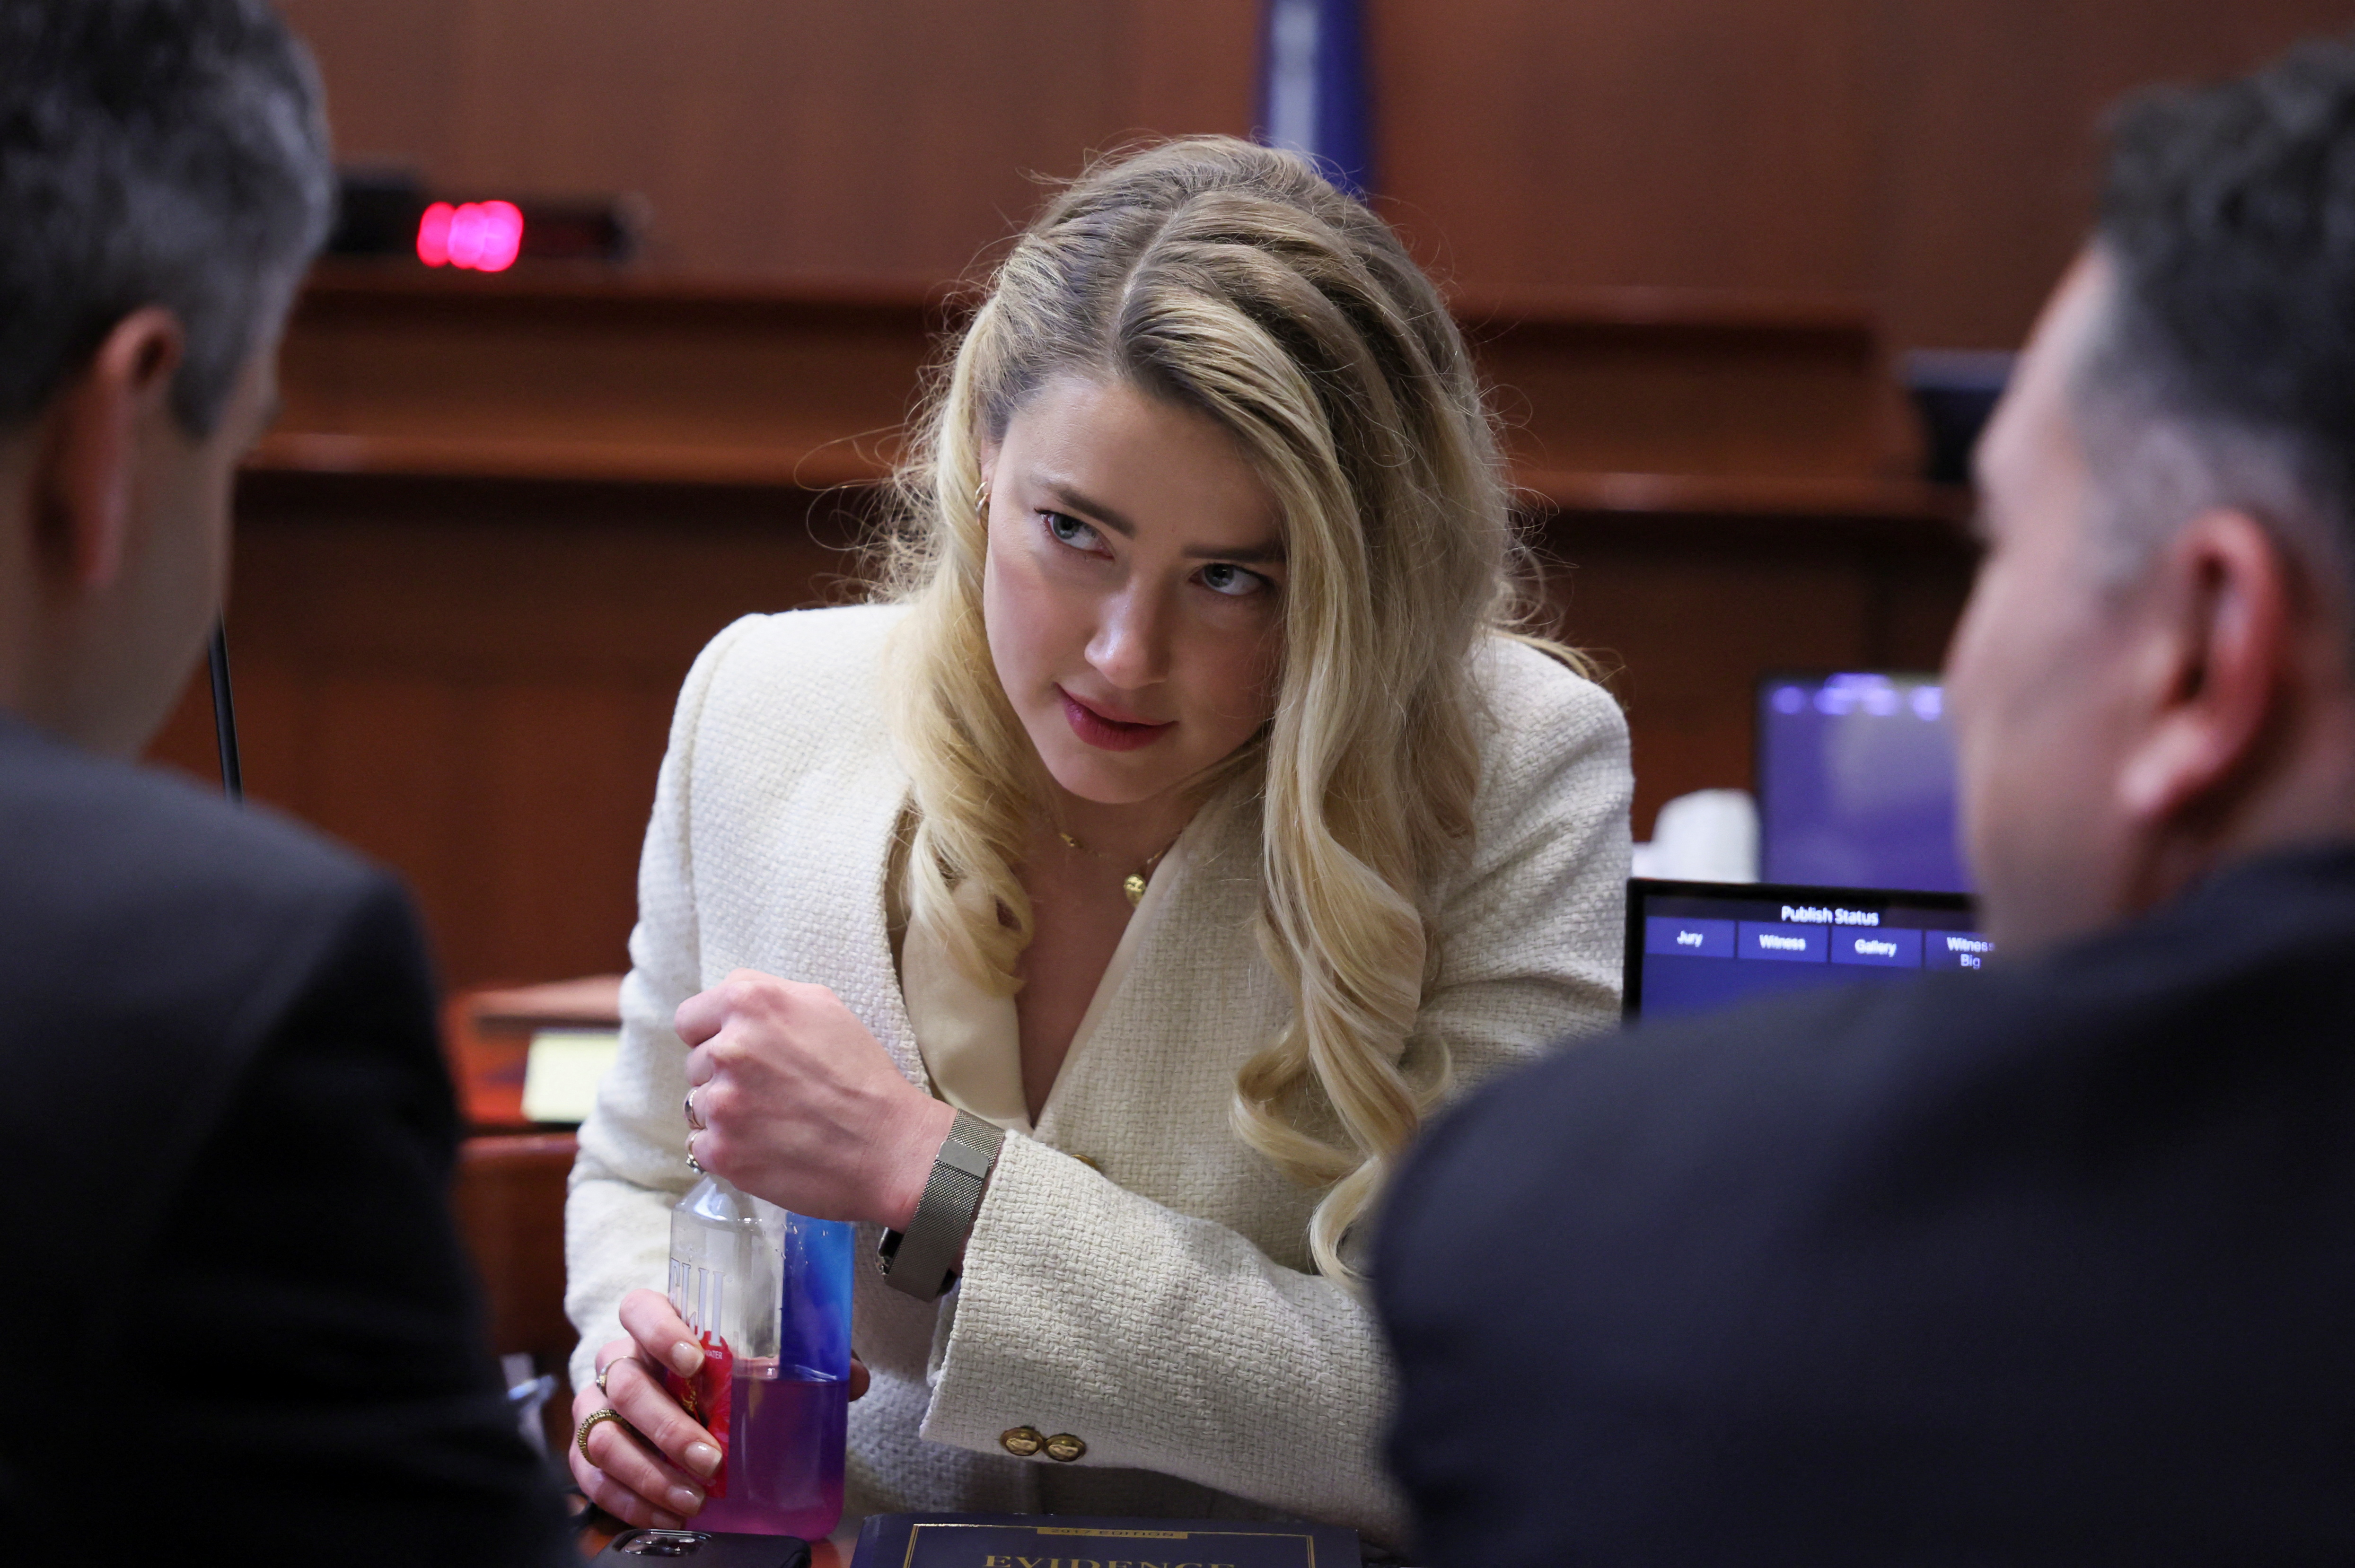 La actriz Amber Heard habla con sus abogados durante el juicio por difamación que le entabló su ex, Johnny Depp (REUTERS/Evelyn Hockstein/Pool)